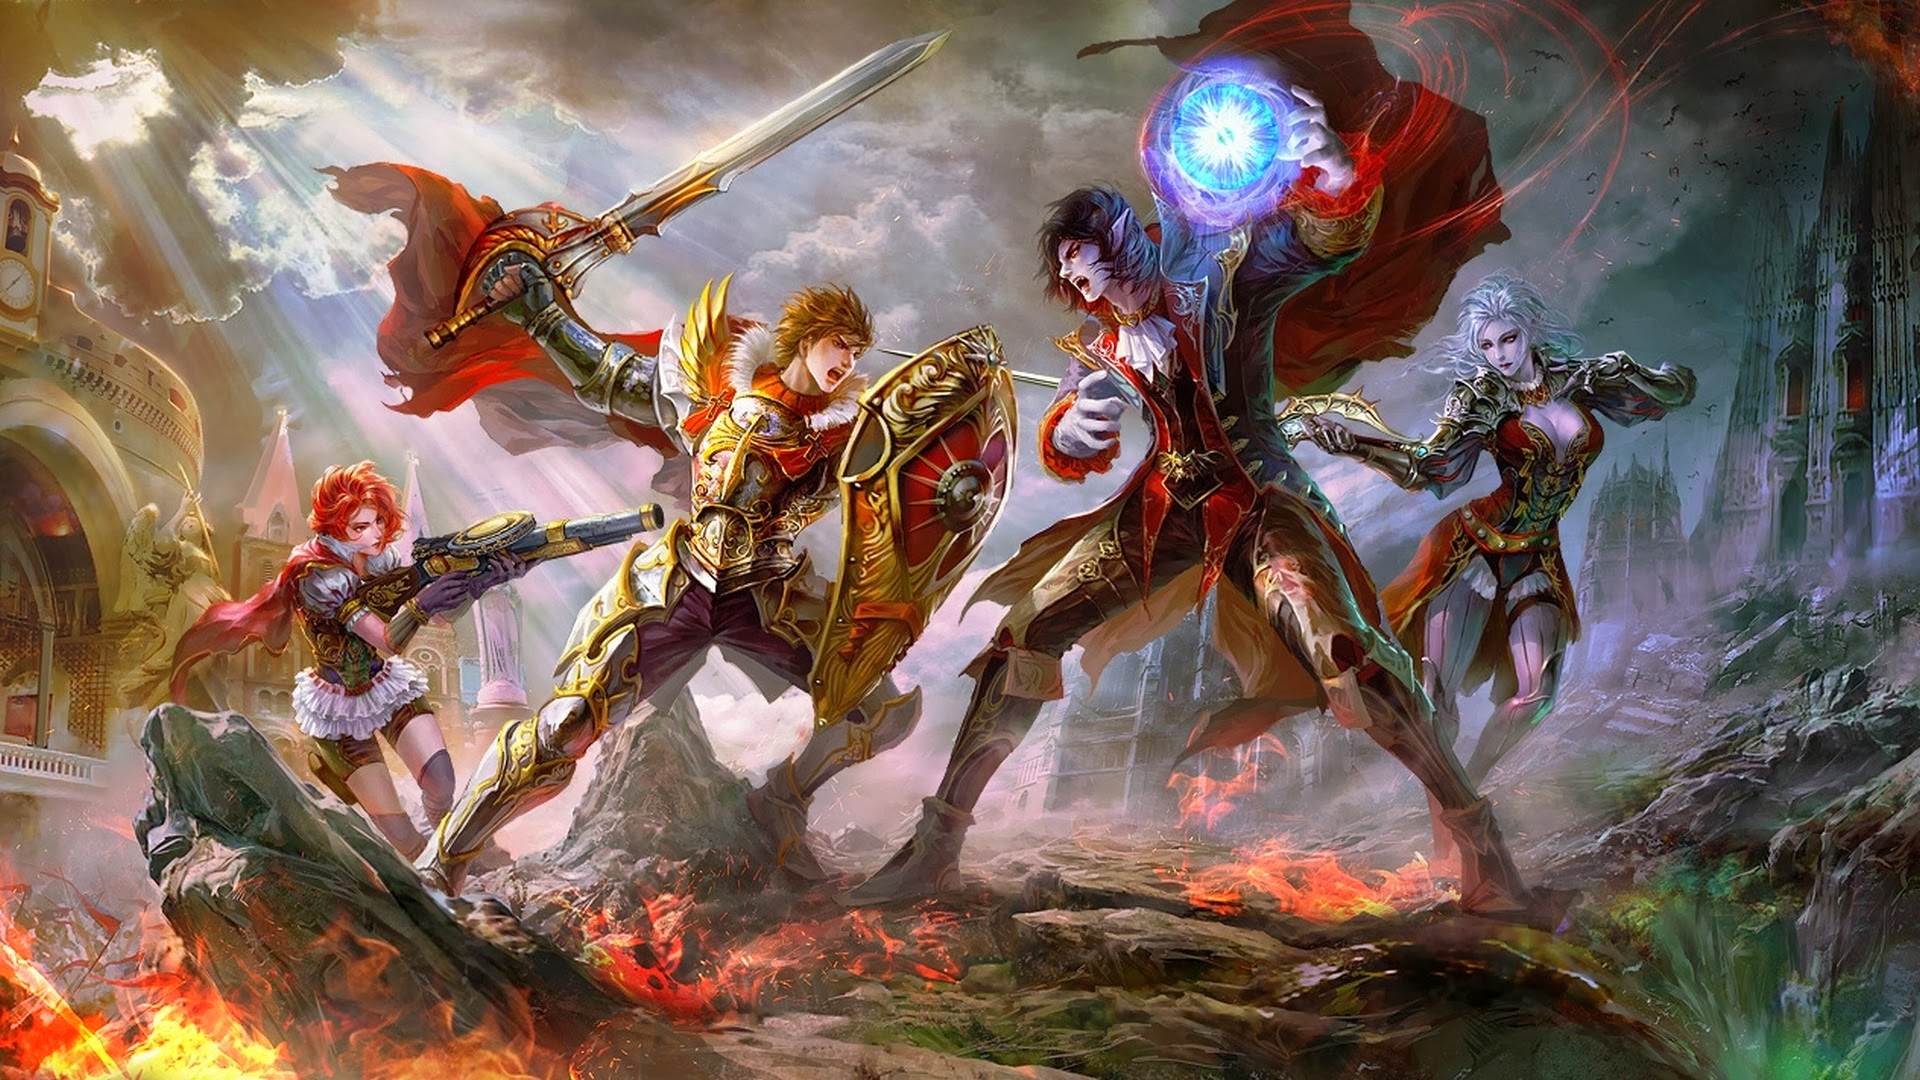 fantasy-guns-knights-fight-fantasy-art-vampires-sword-shield-battles-Wallpaper.jpg